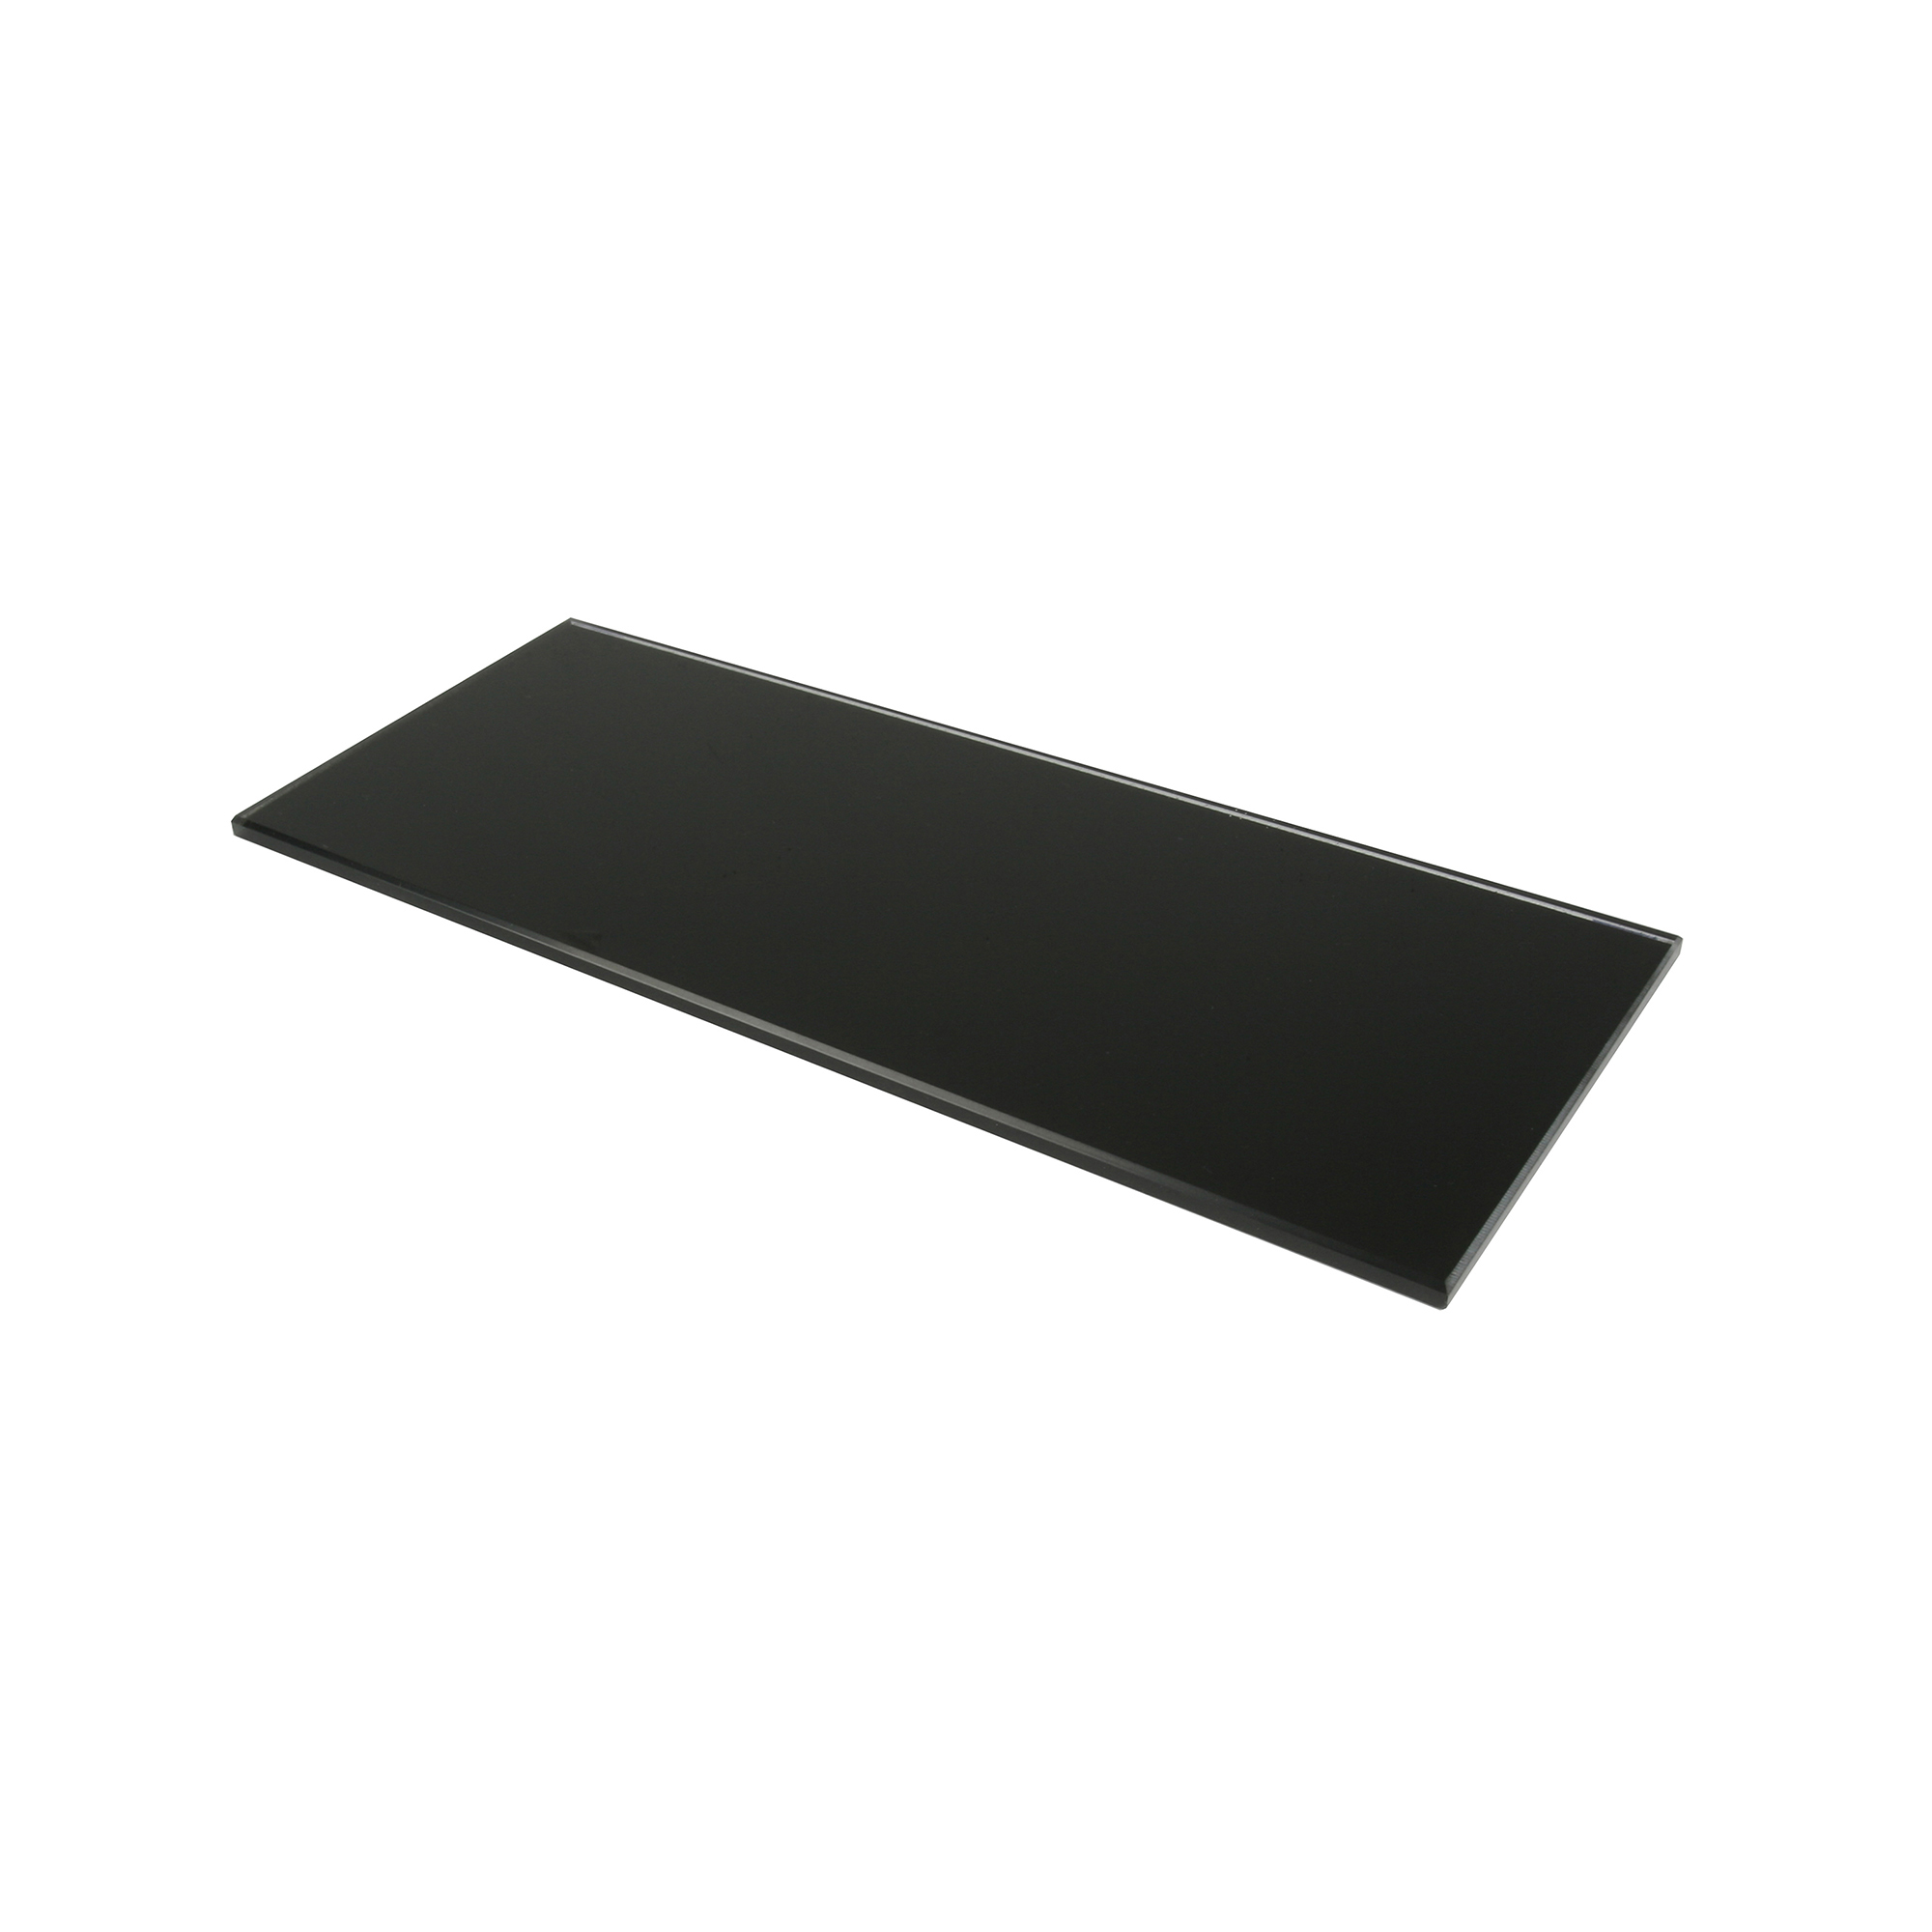 Étagère rectangulaire en verre Finition noire | Dimensions 300*6*120mm | Épaisseur de l'étagère : 6 mm | 1 unité